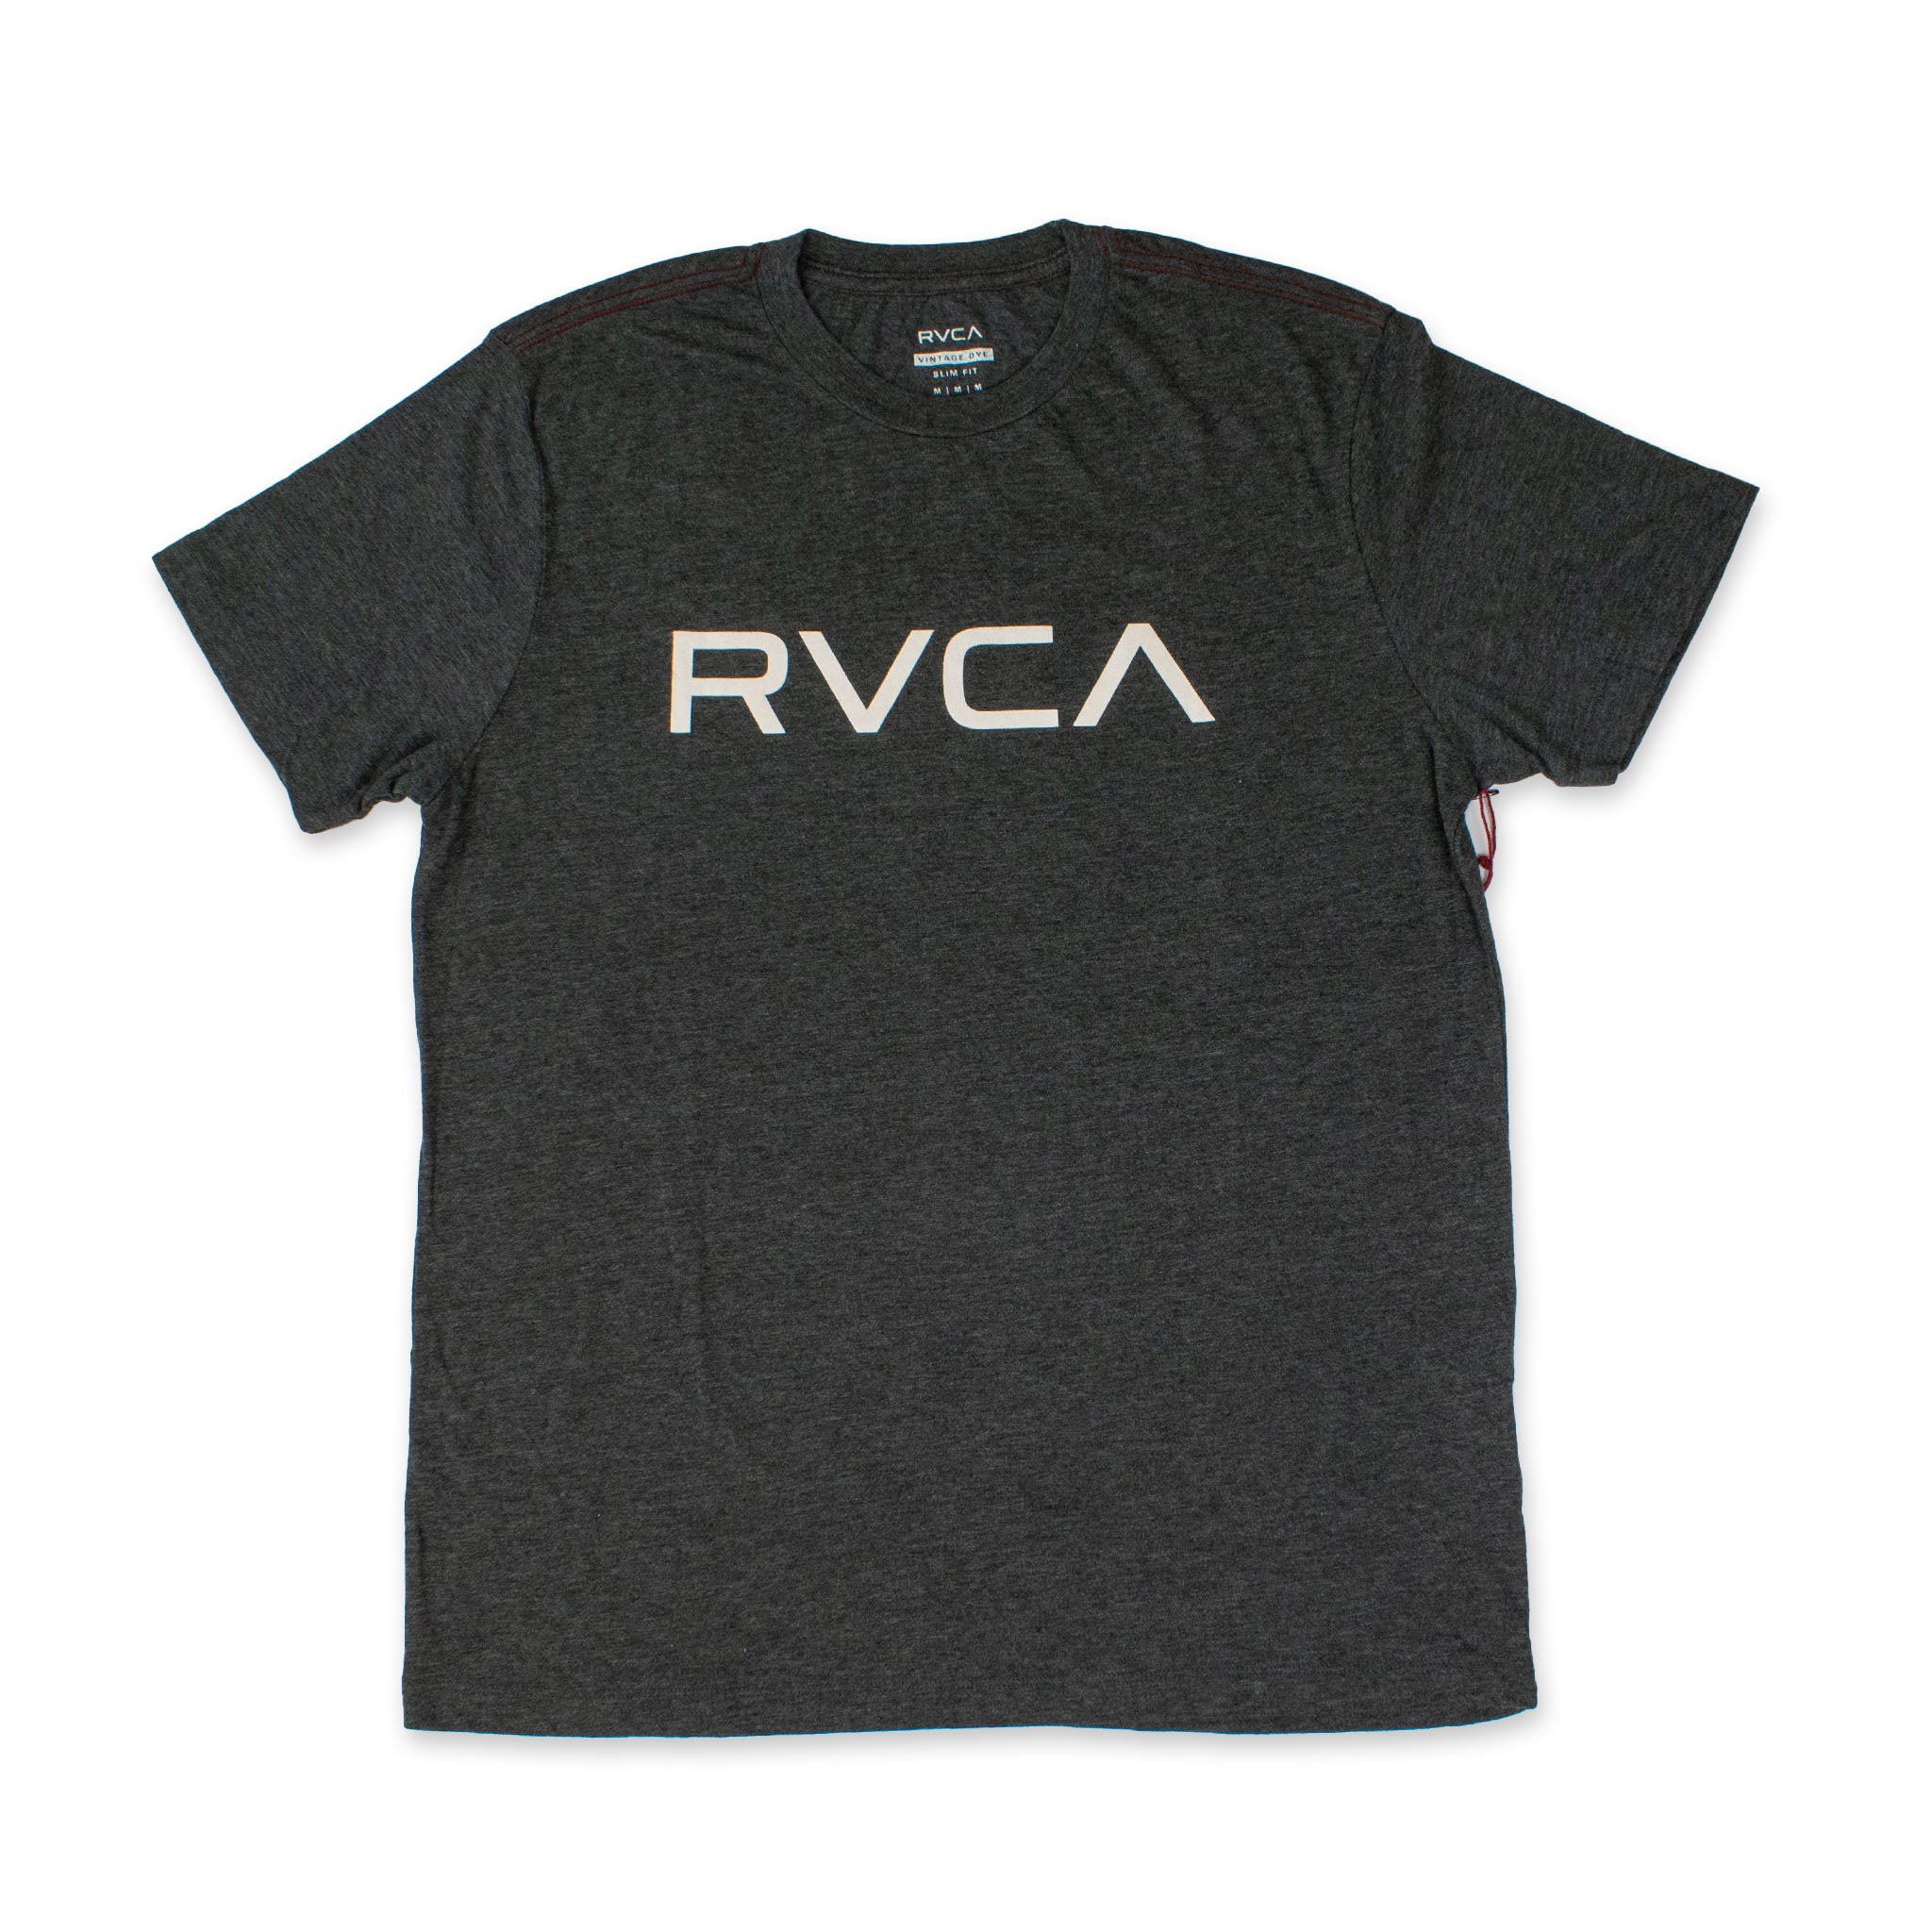 ルーカ/RVCＡ ビッグロゴTシャツ 半袖 スリムフィット ヴィンテージ染